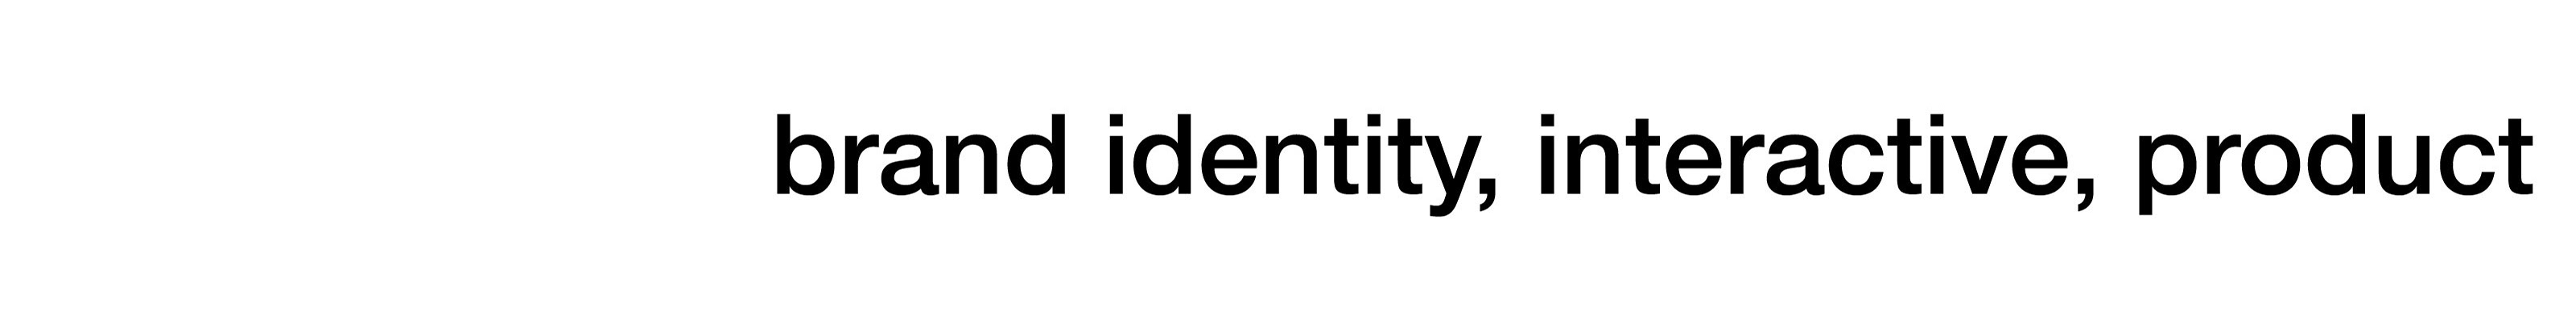 moodley design's profile banner